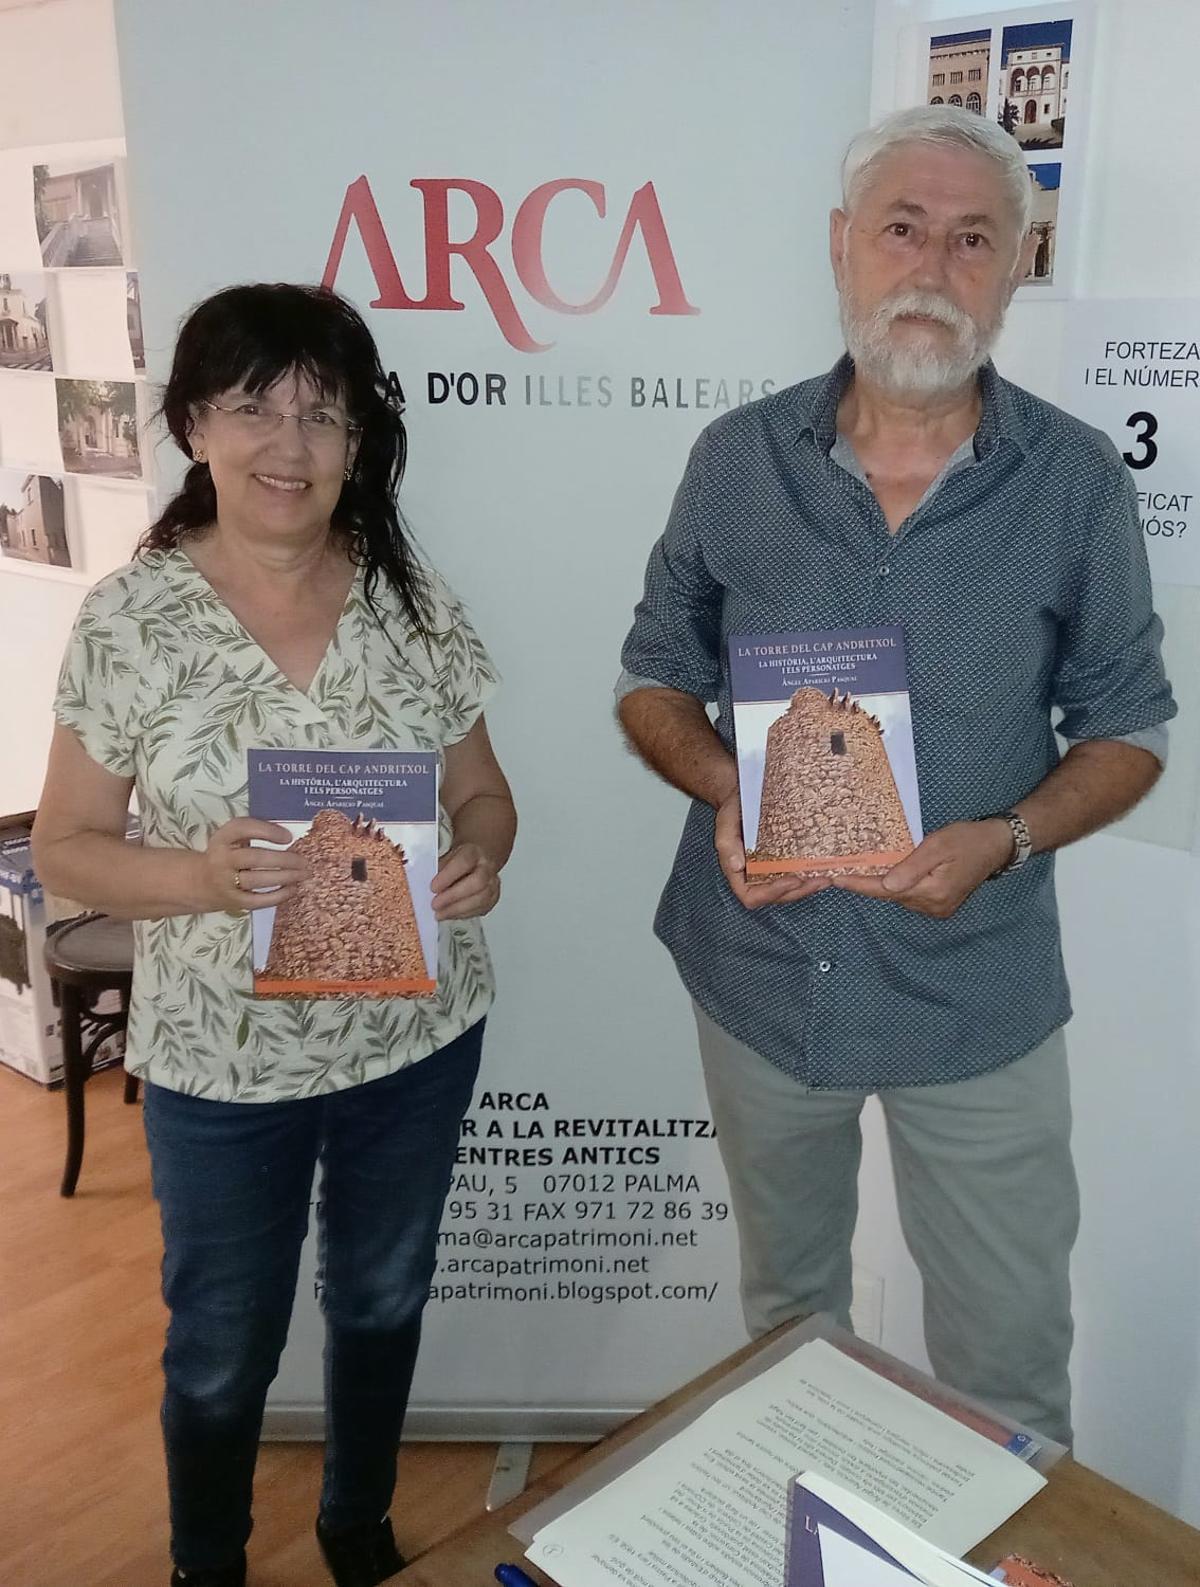 Angels Fermoselle, de Arca, junto a Àngel Aparicio, autor del libro.